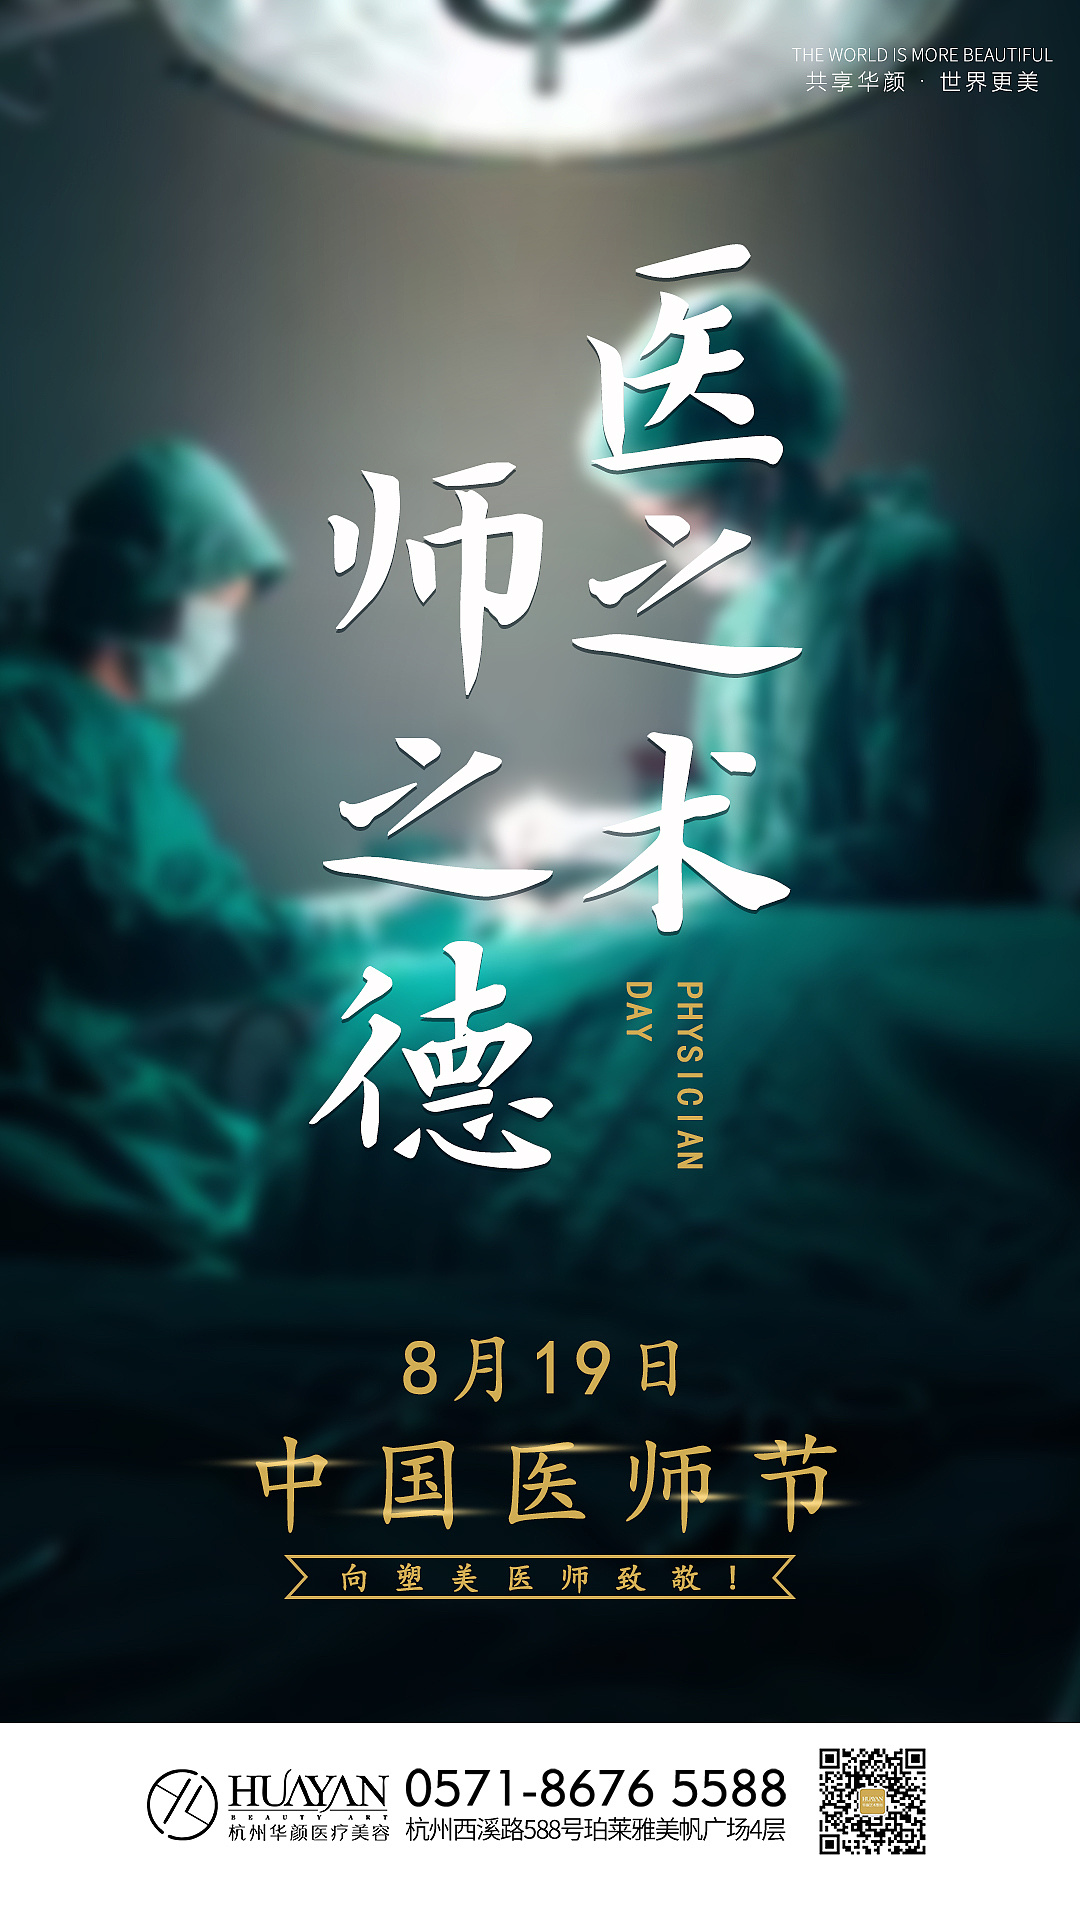 中国医师节辛苦尽力拯救每一个生命敬佑生命救死扶伤海报素材模板下载 - 图巨人